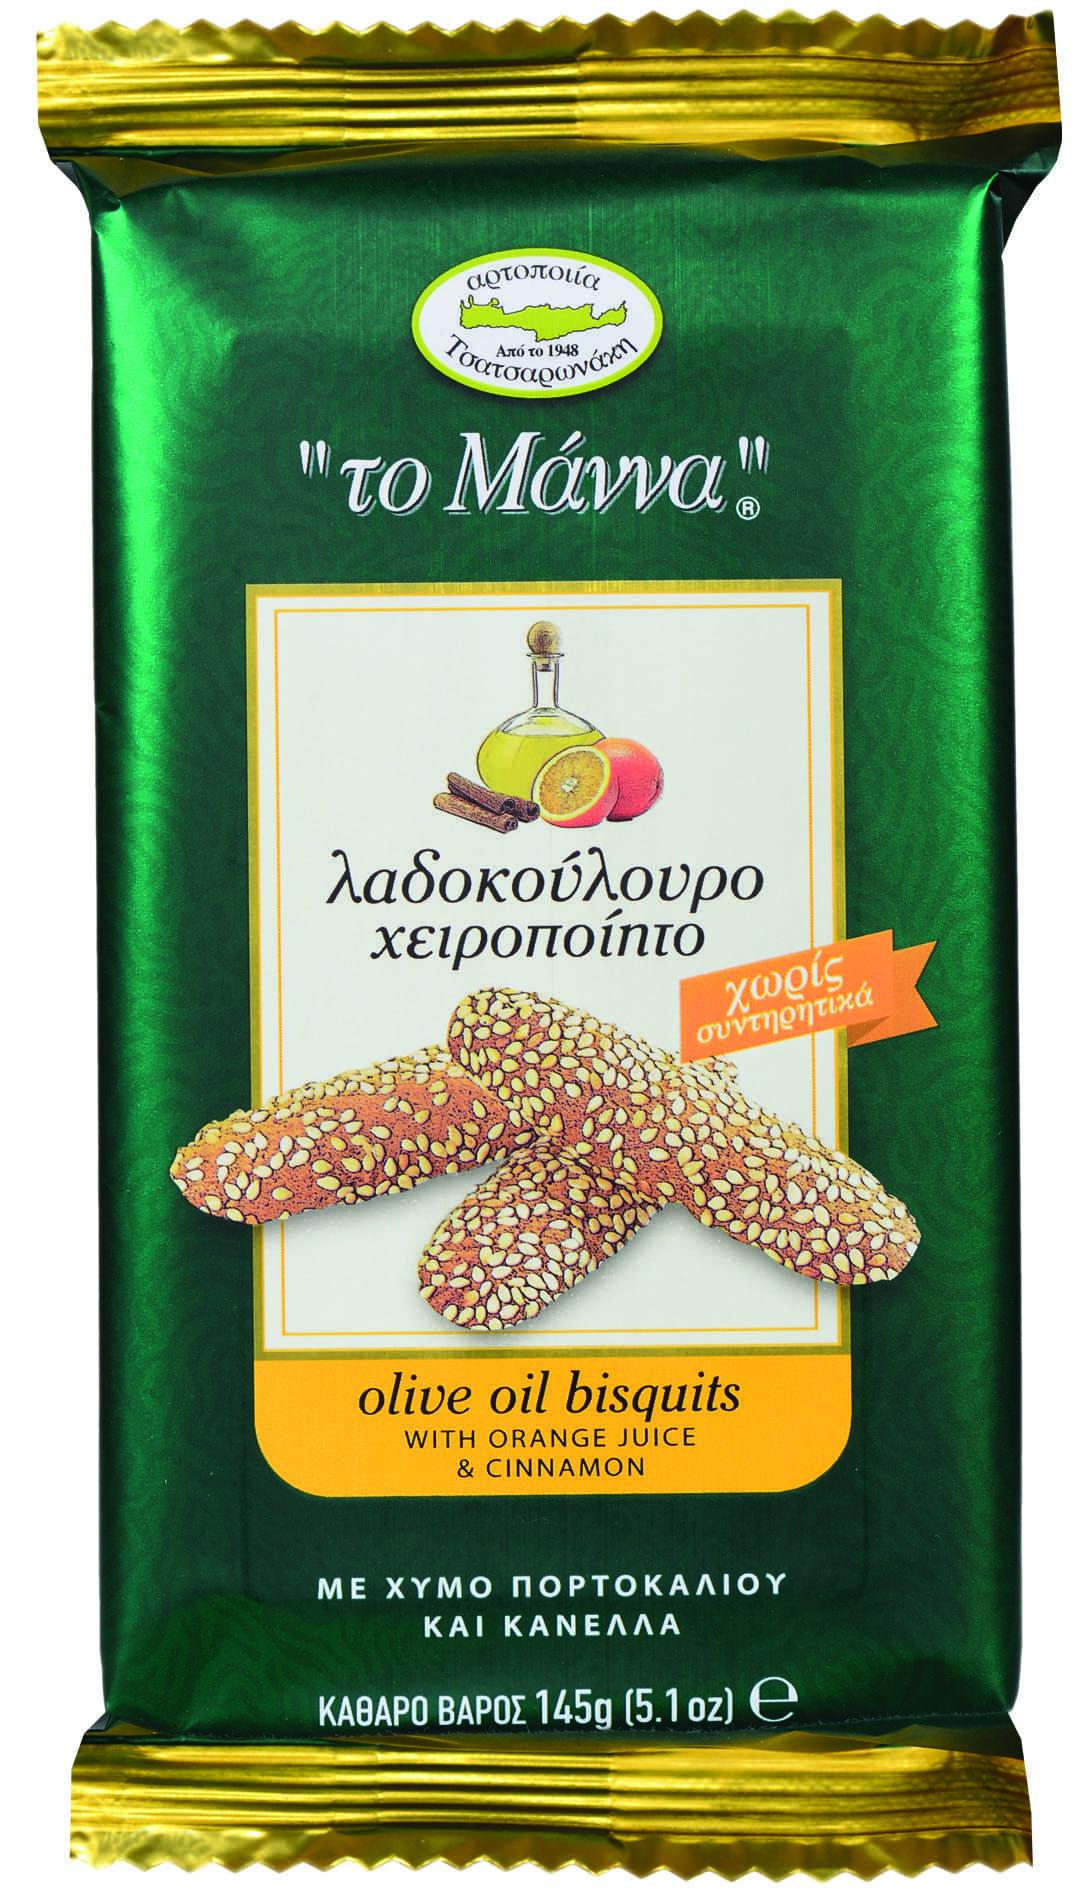 Печенье с оливковым маслом апельсиновым соком и корицей Manna, 145 гр., флоу-пак